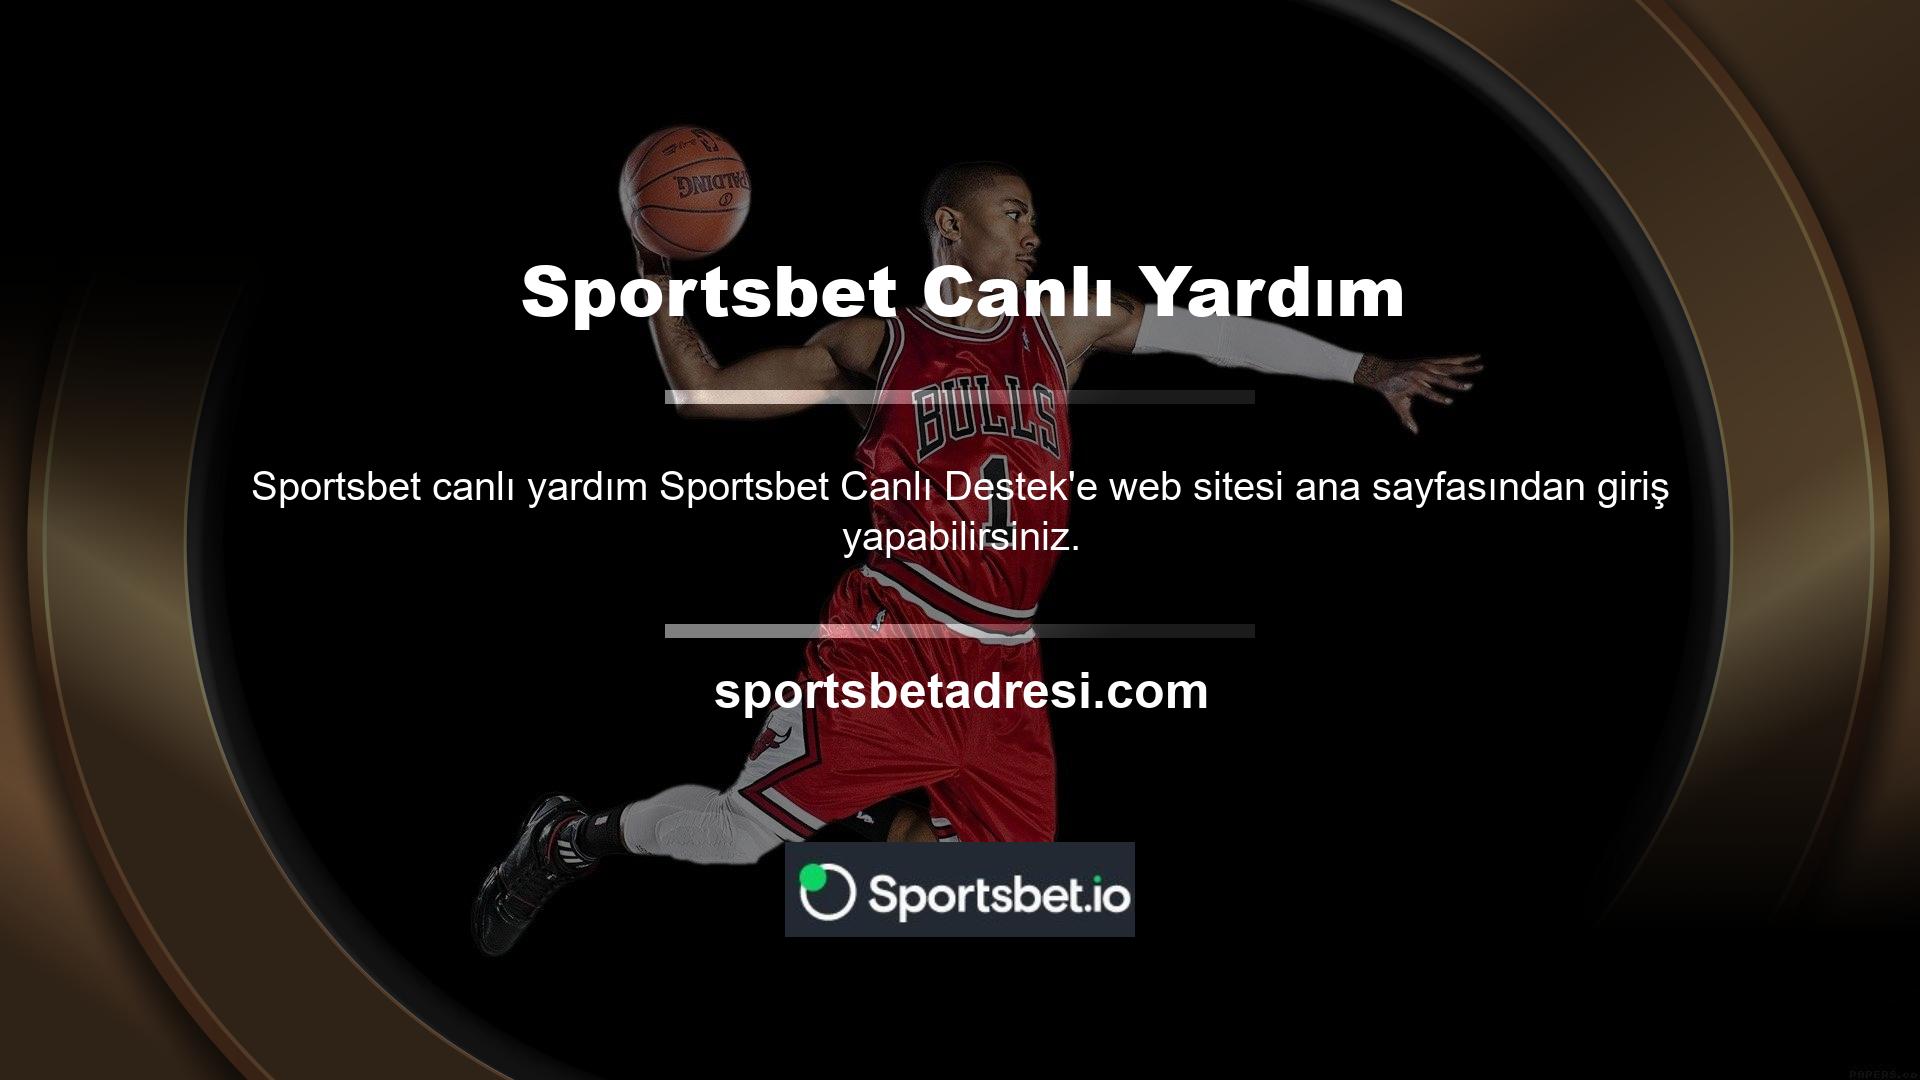 Sportsbet canlı destek sekmesi bahis sitesinin ana sayfasının sağ alt kısmında yer almaktadır